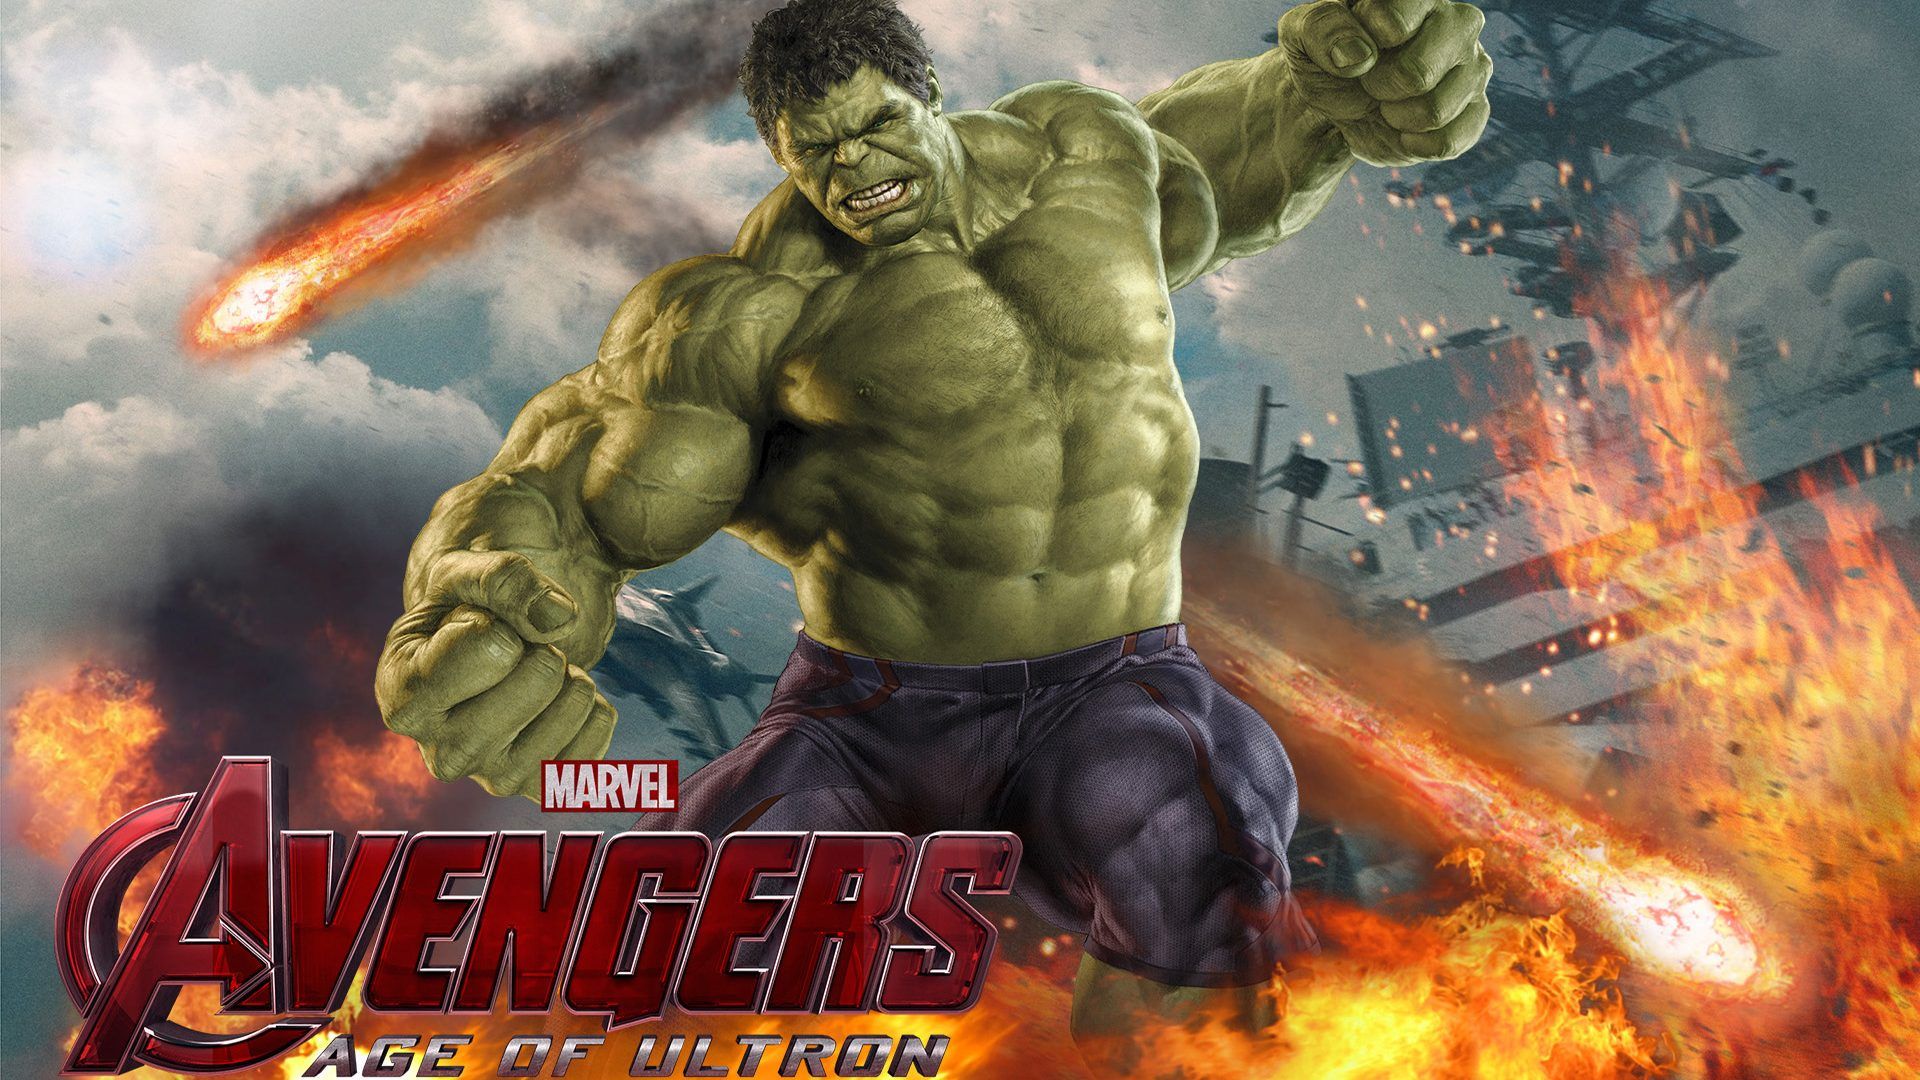 Download wallpaper night, rain, the game, Hulk, Marvel's Avengers